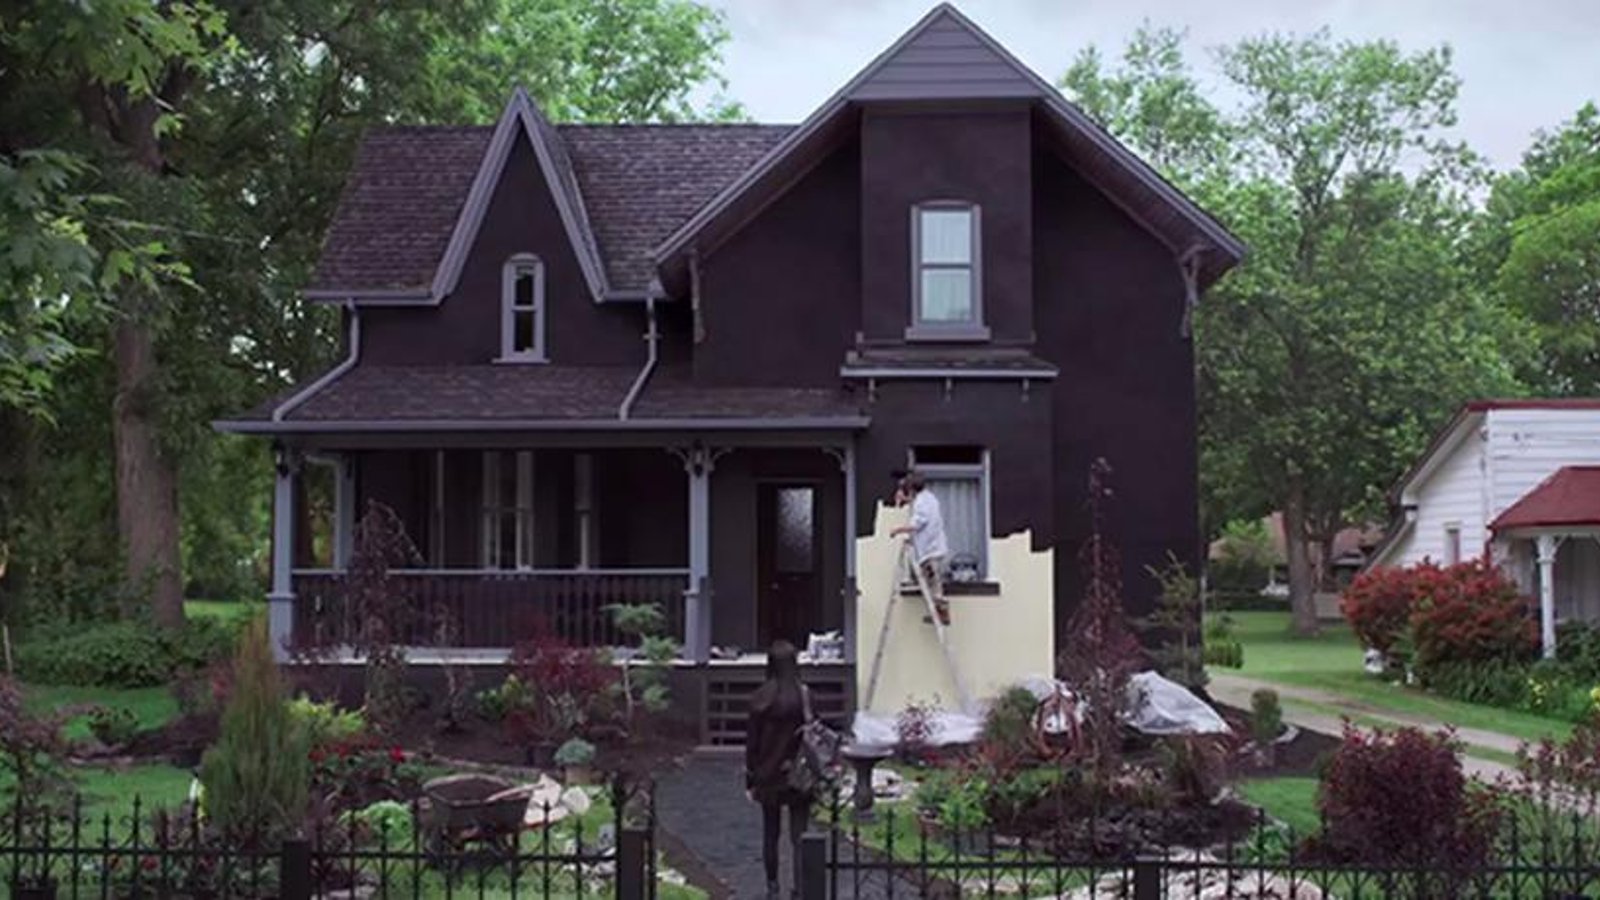 Un homme peint sa maison en noir afin de lancer un message fort!